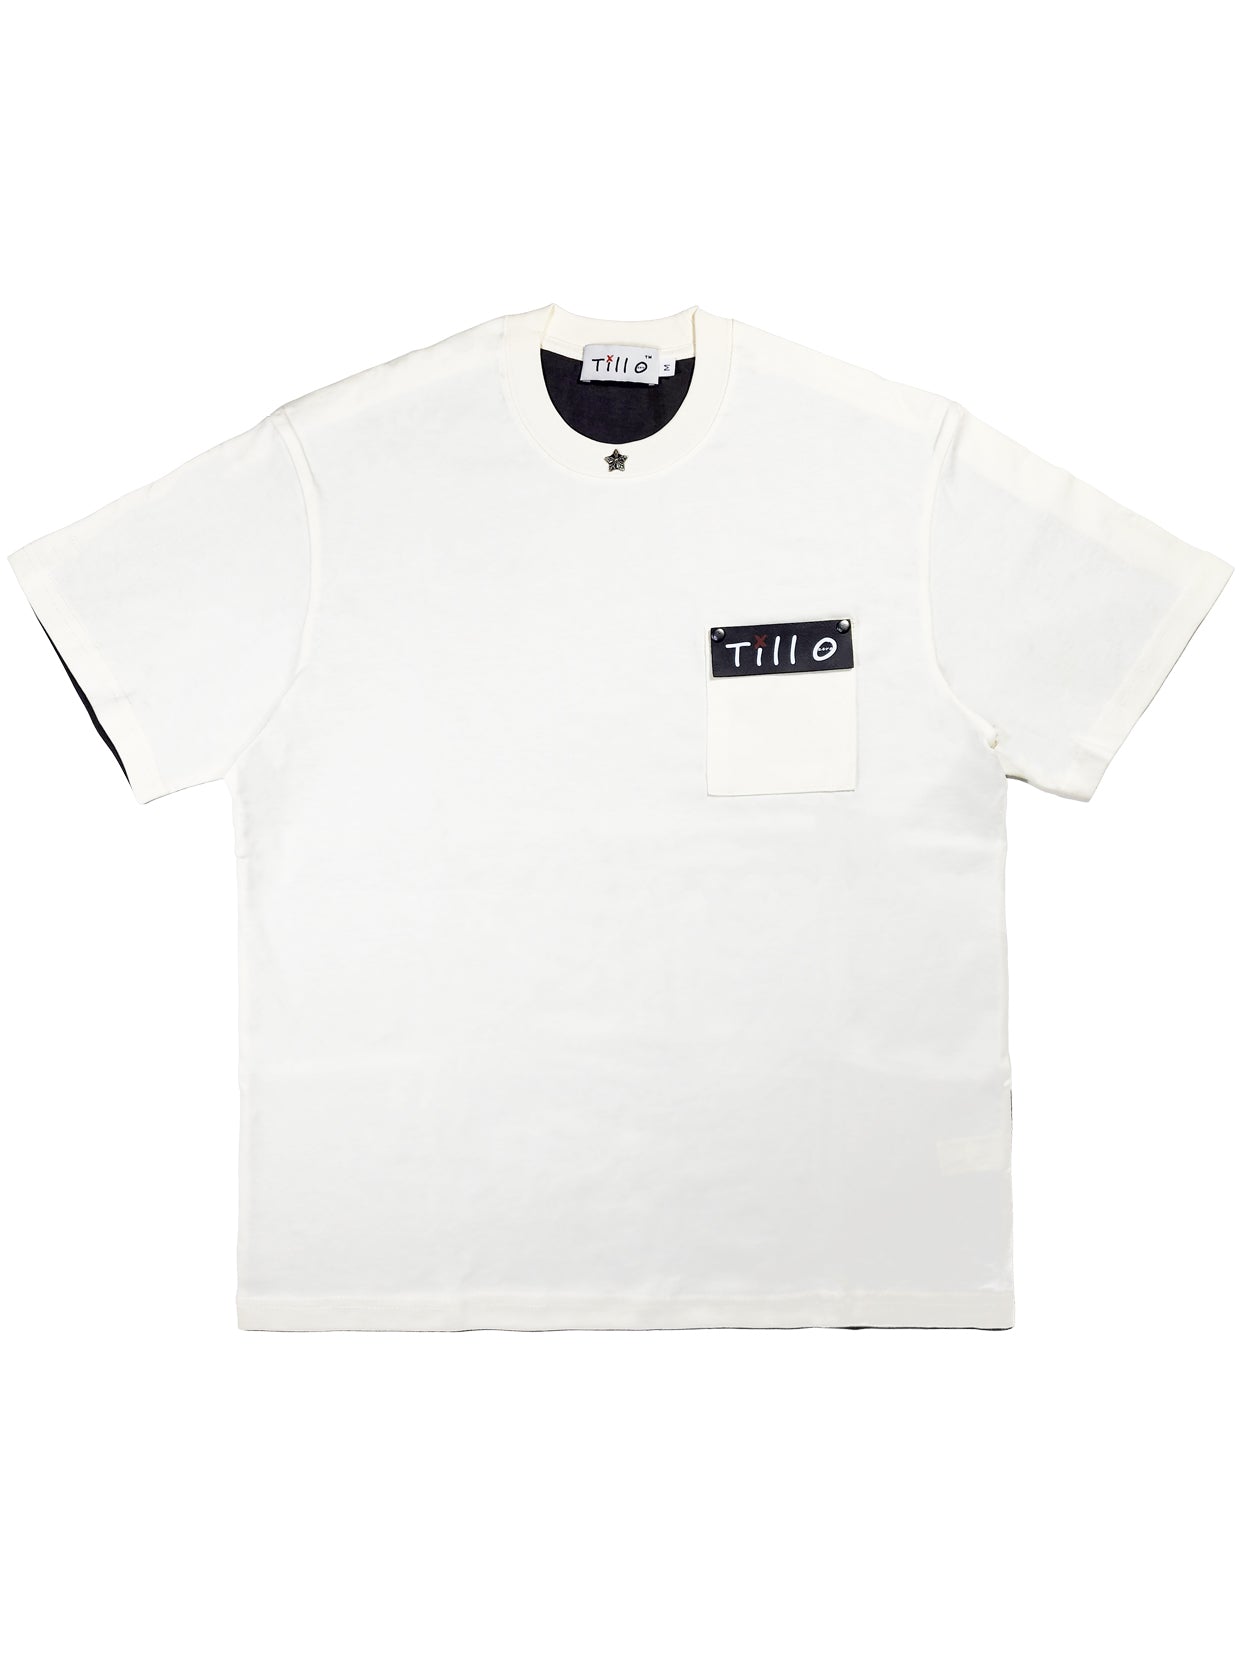 Black White T-Shirt